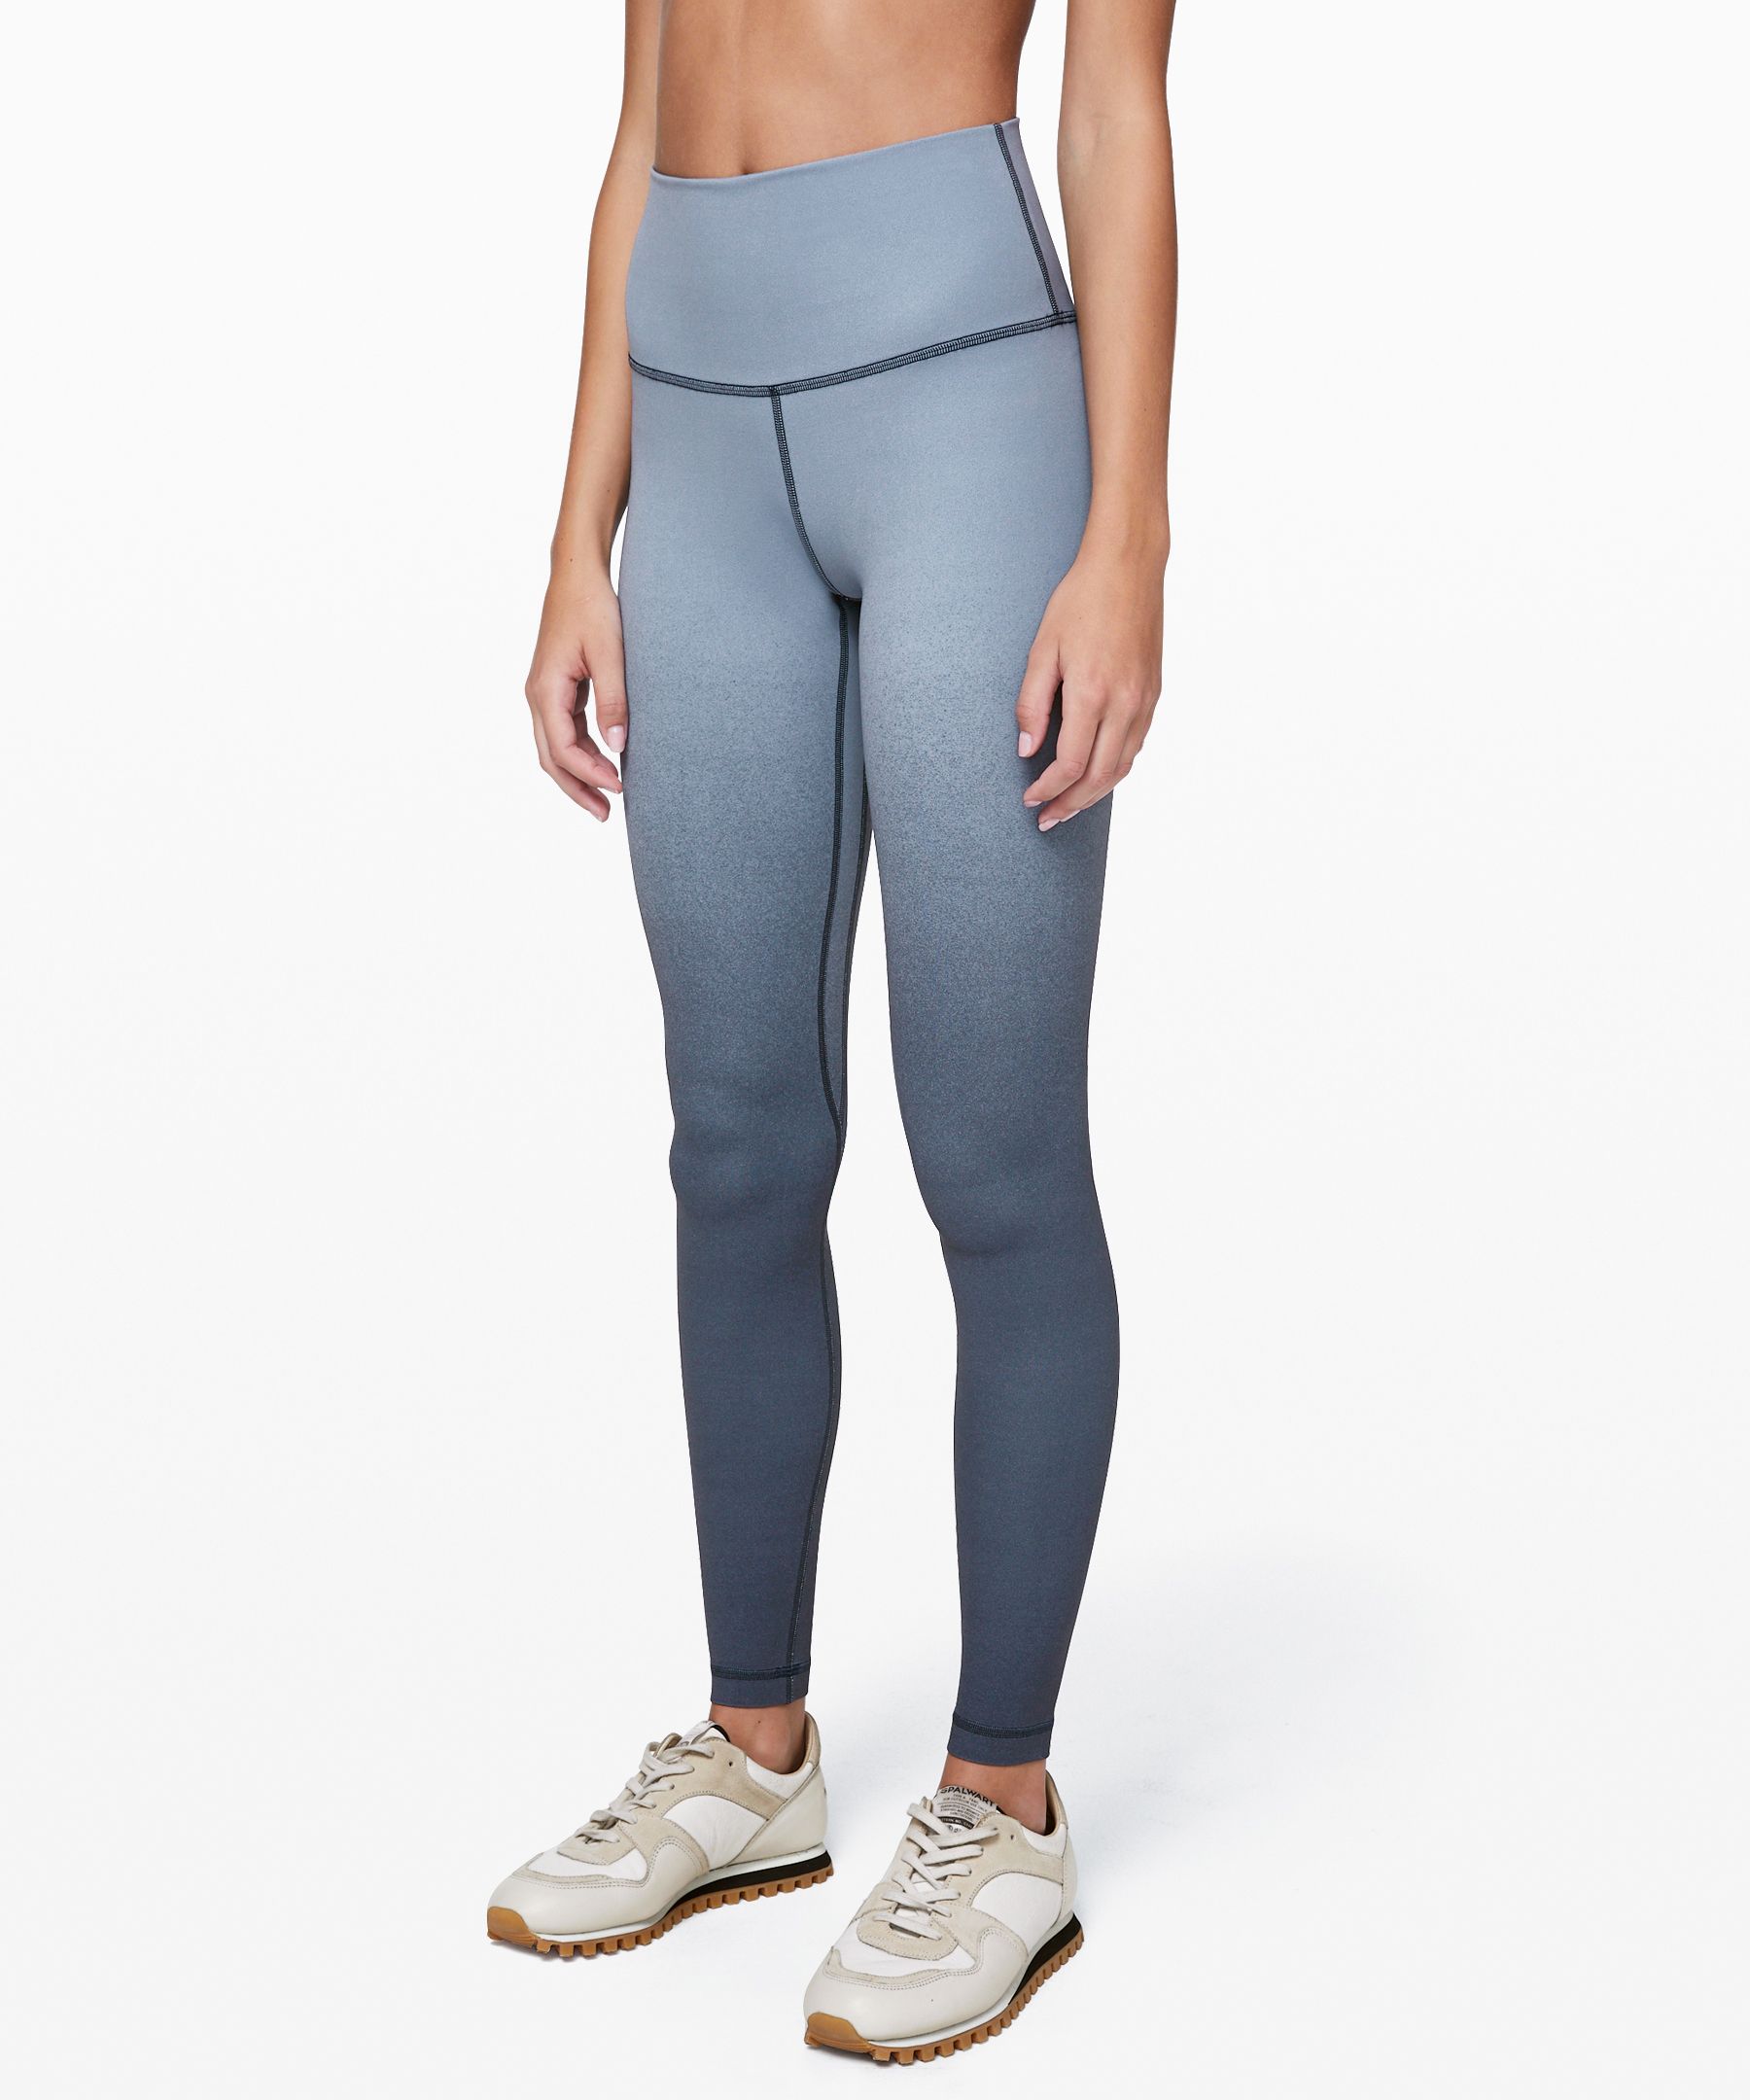 lululemon jean leggings, OFF 76%,Cheap 